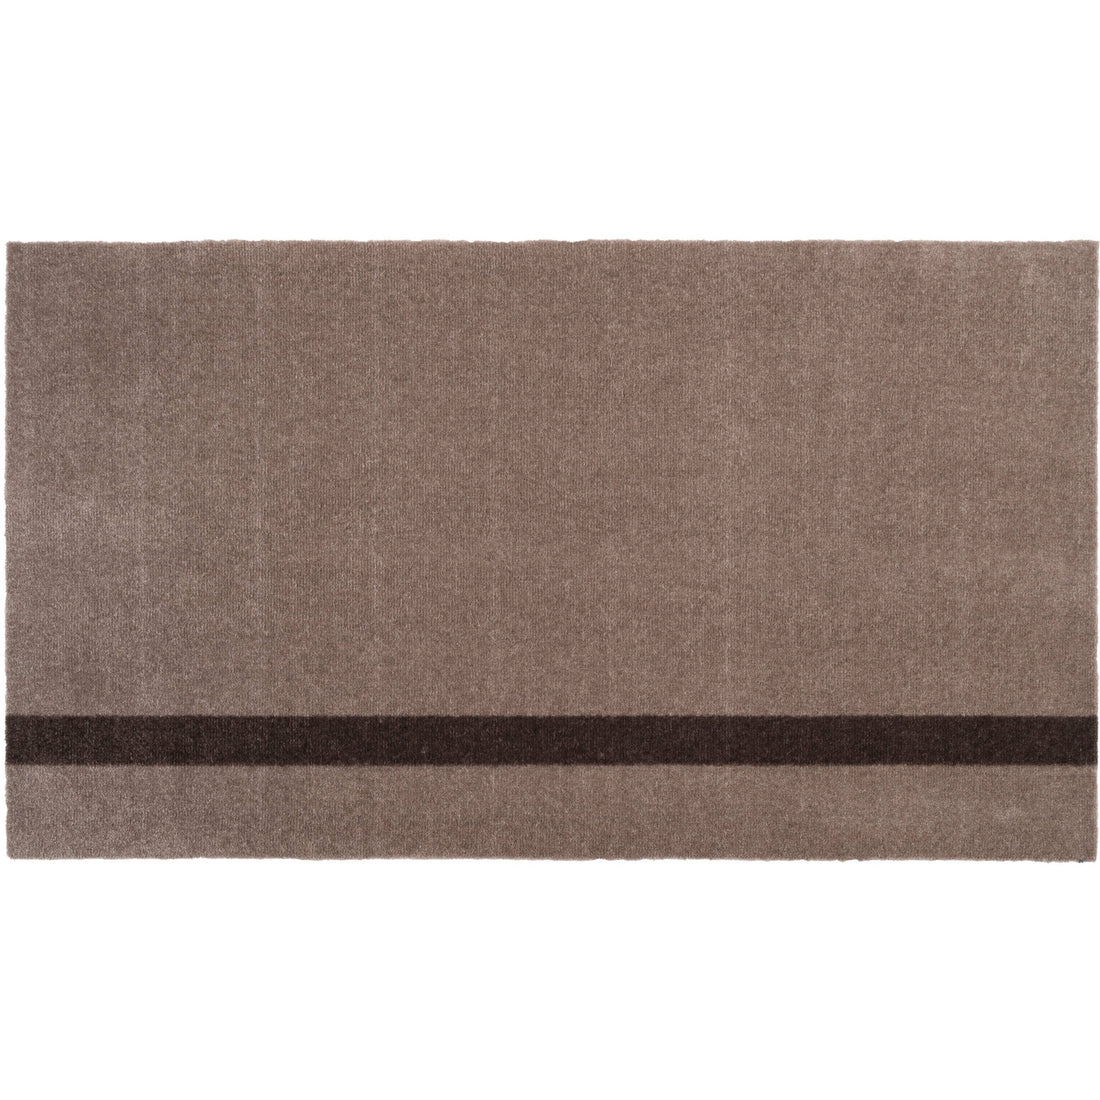 Tica Copenhagen - Rubber Doormat, 45 x 75 cm, Lines / Black